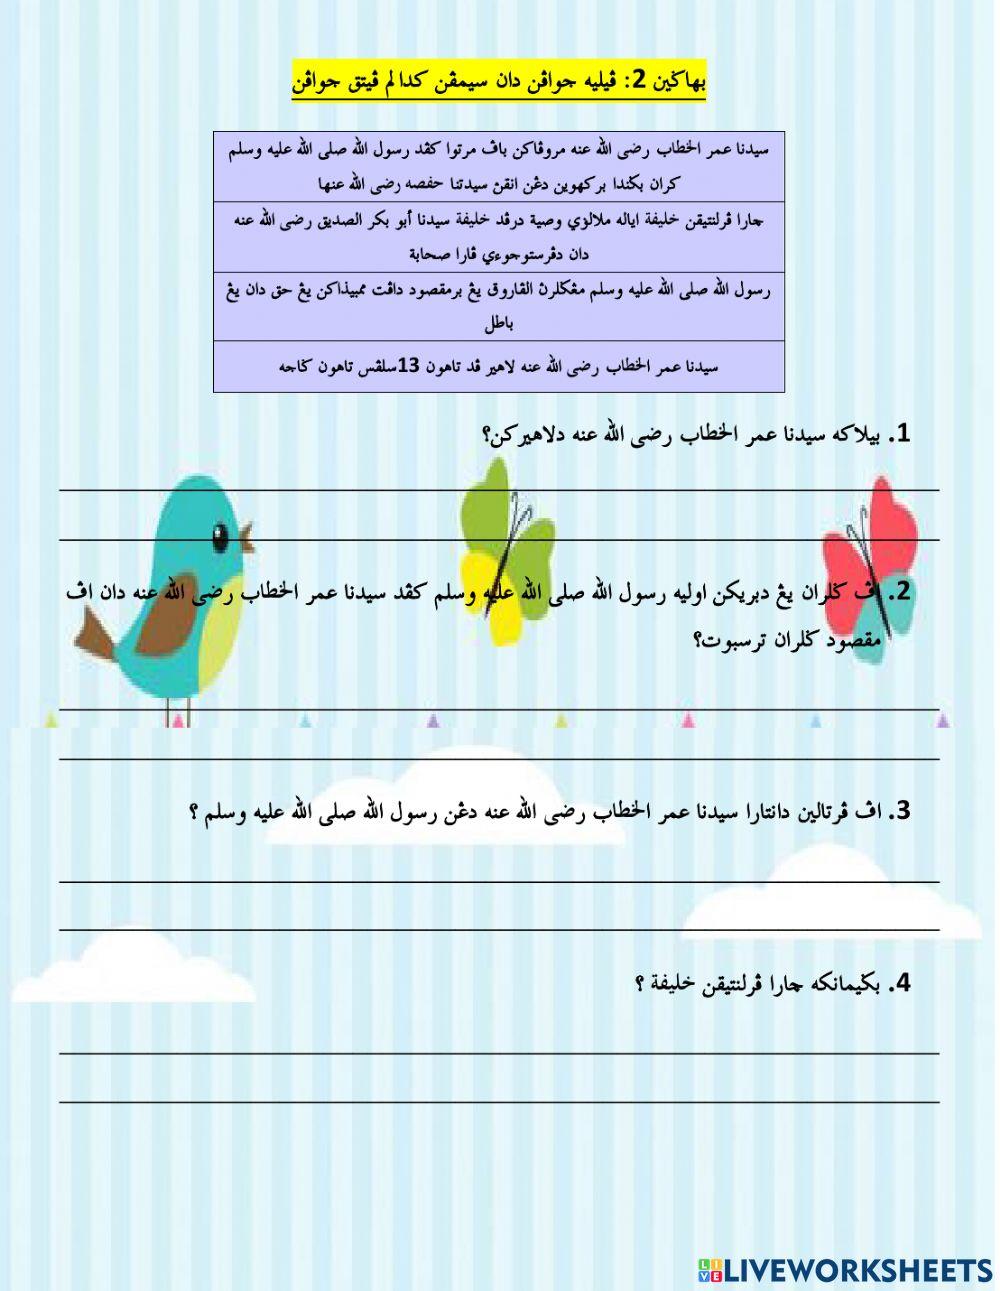 Latihan Khalifah Saidina Umar Al-Khattab